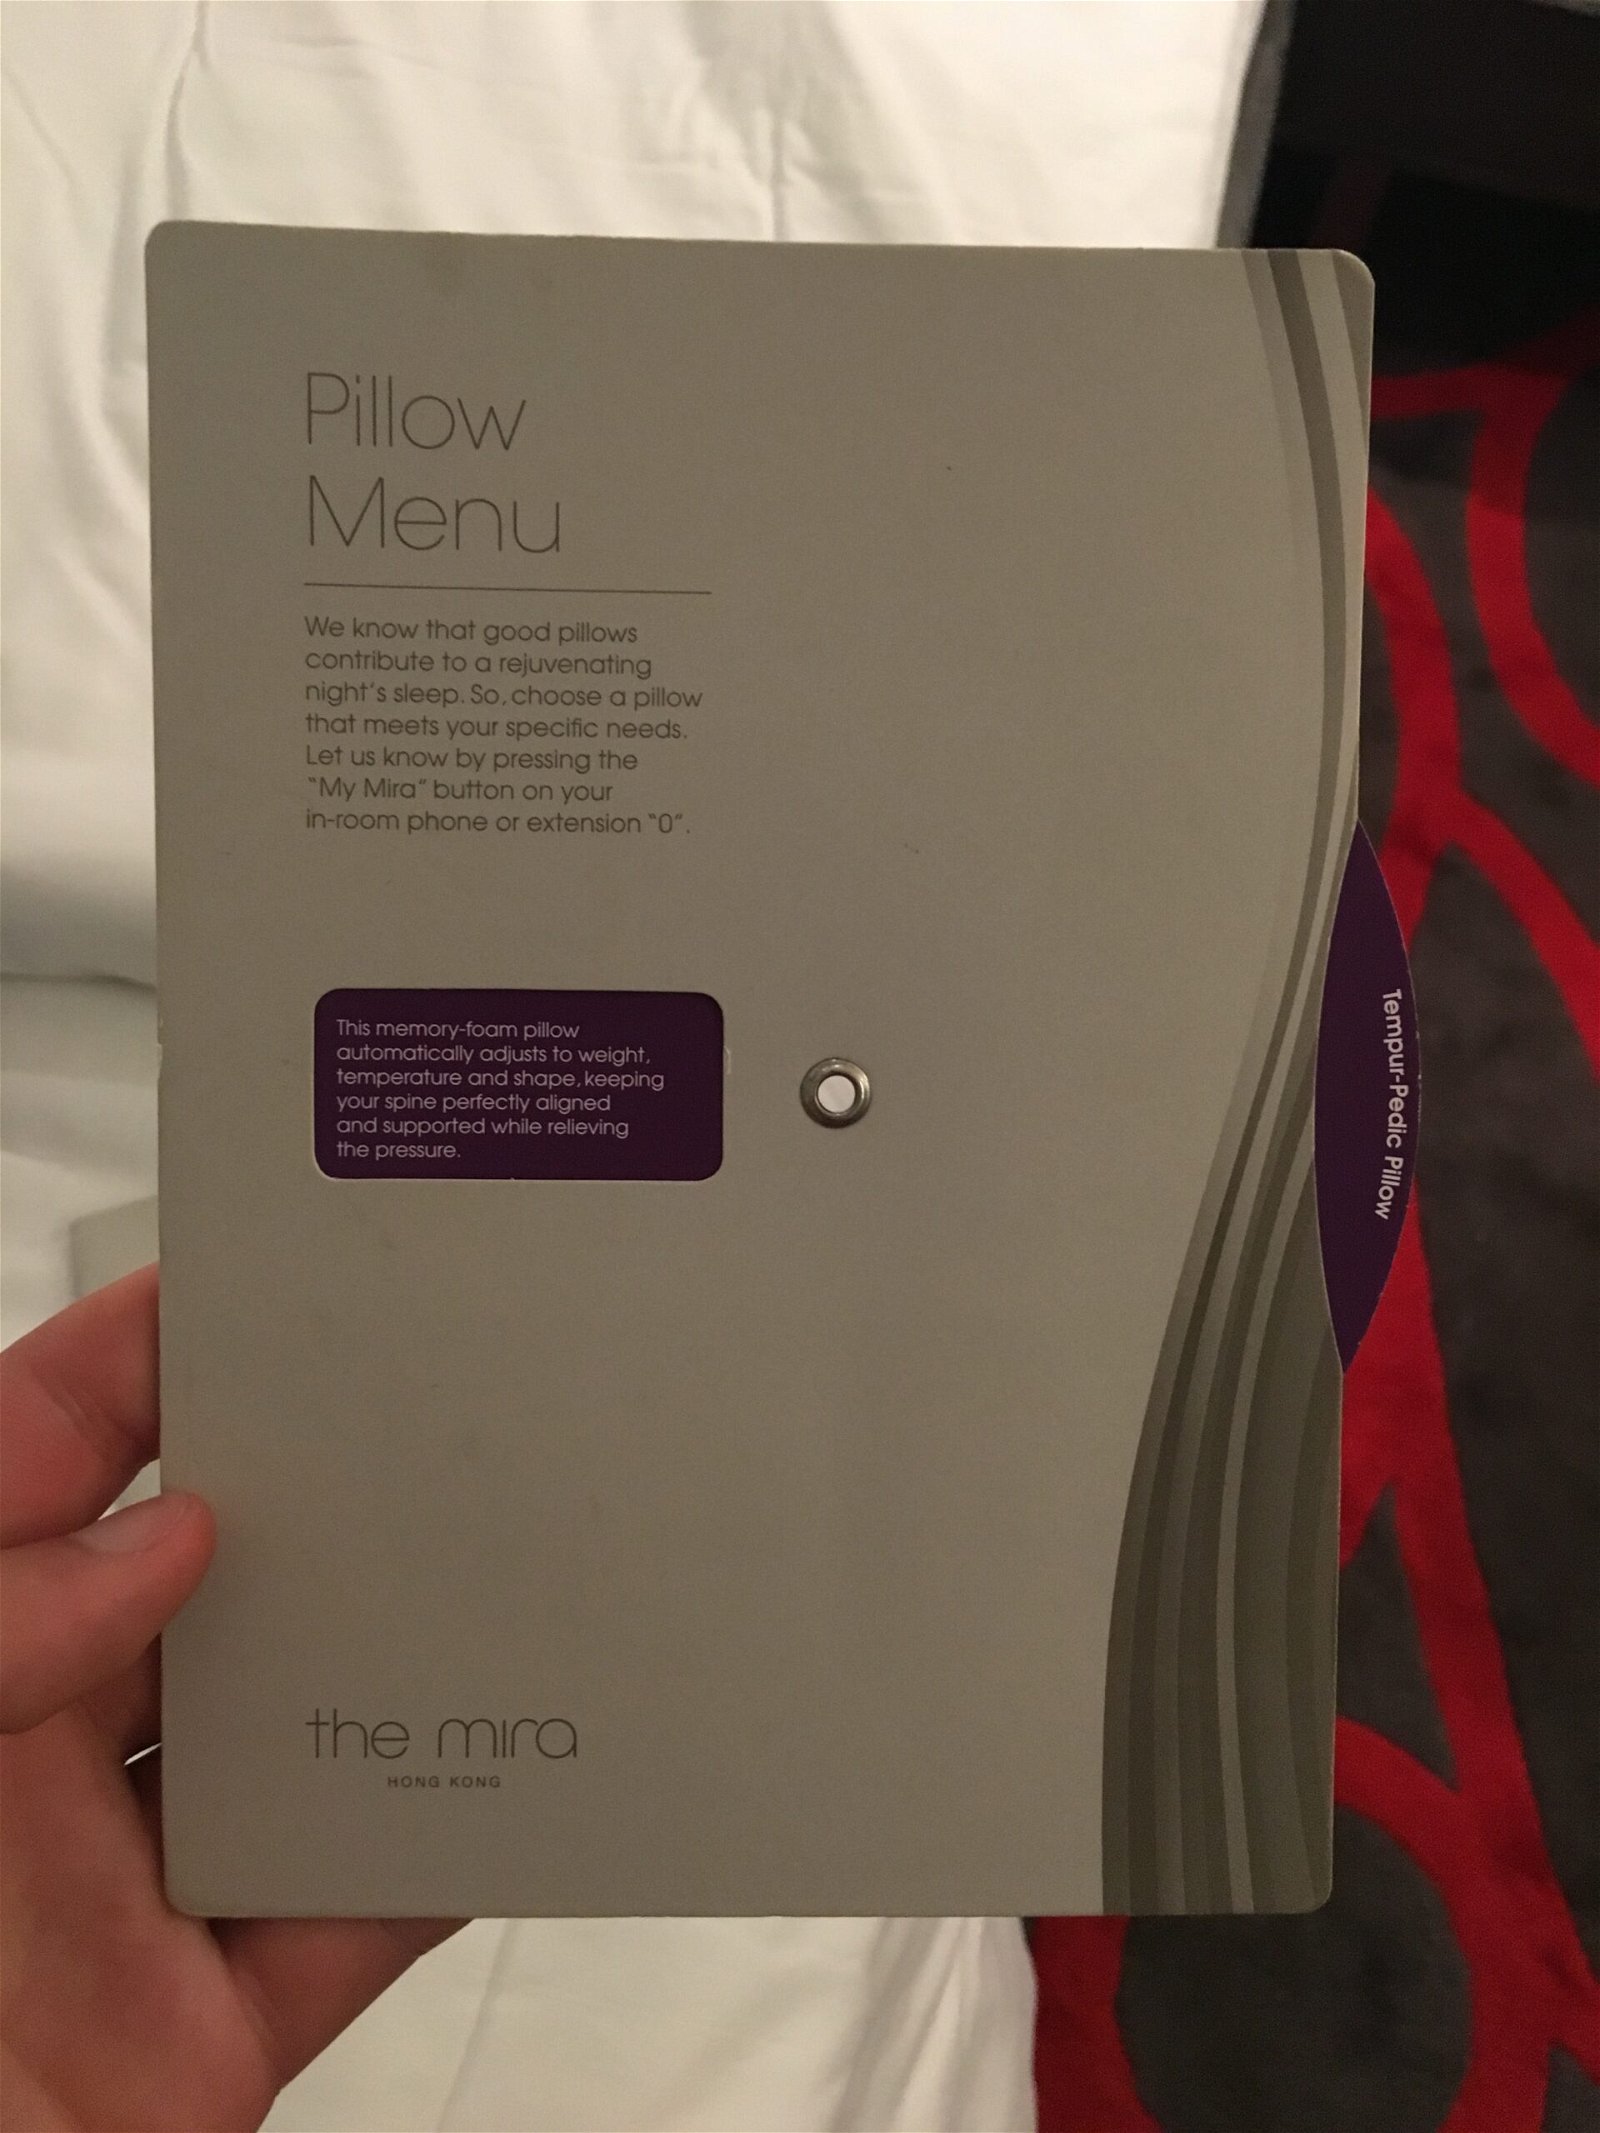 The Mira pillow menu